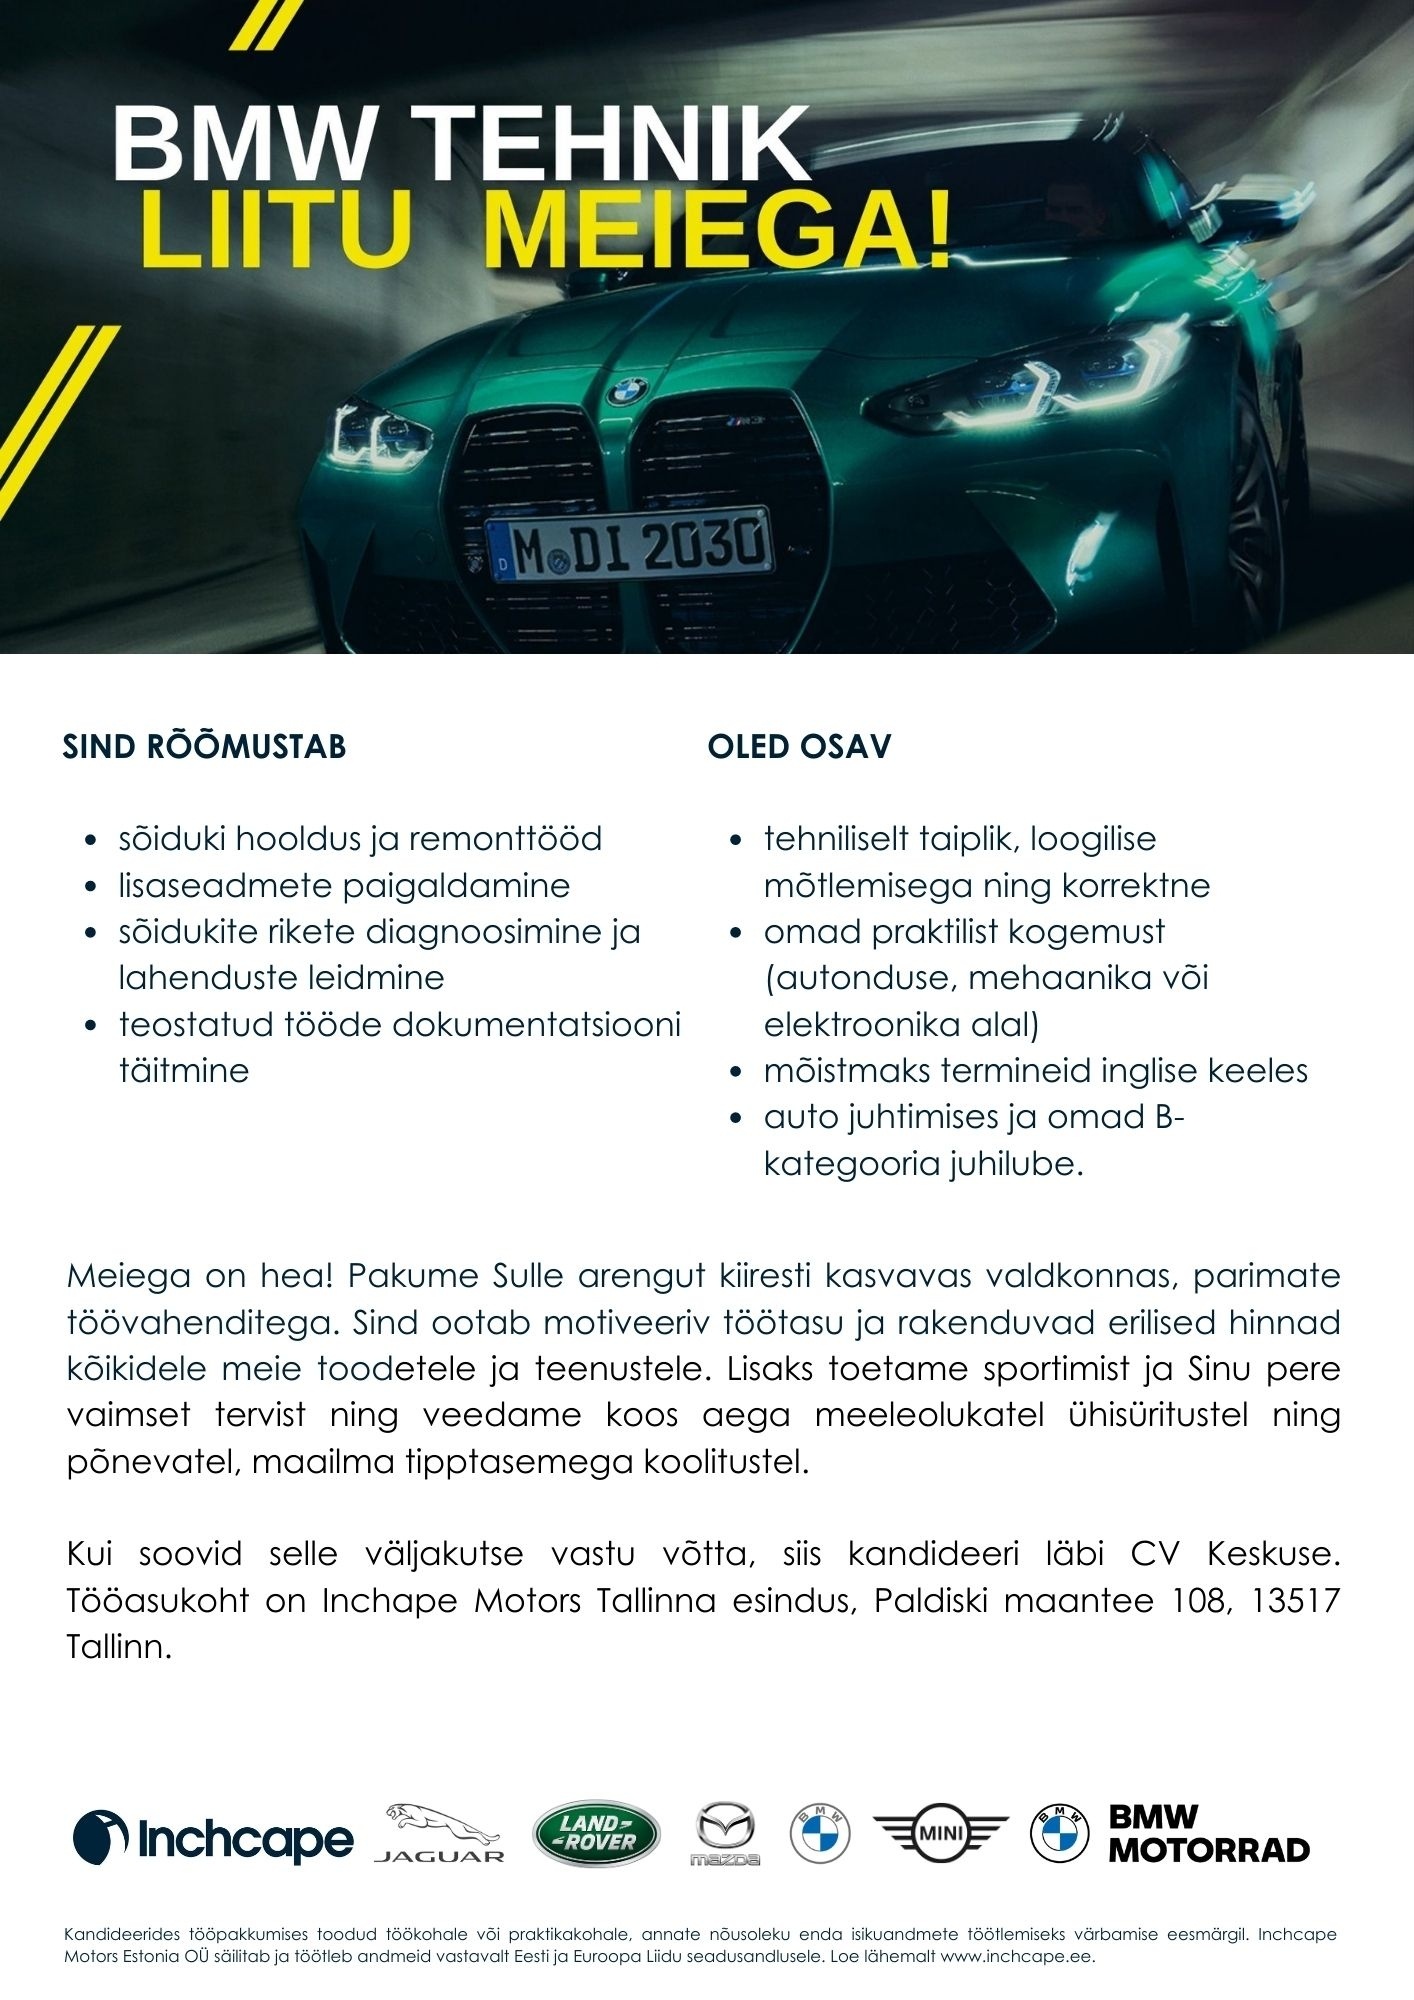 Inchcape Motors Estonia OÜ Tehnik-mehaanik